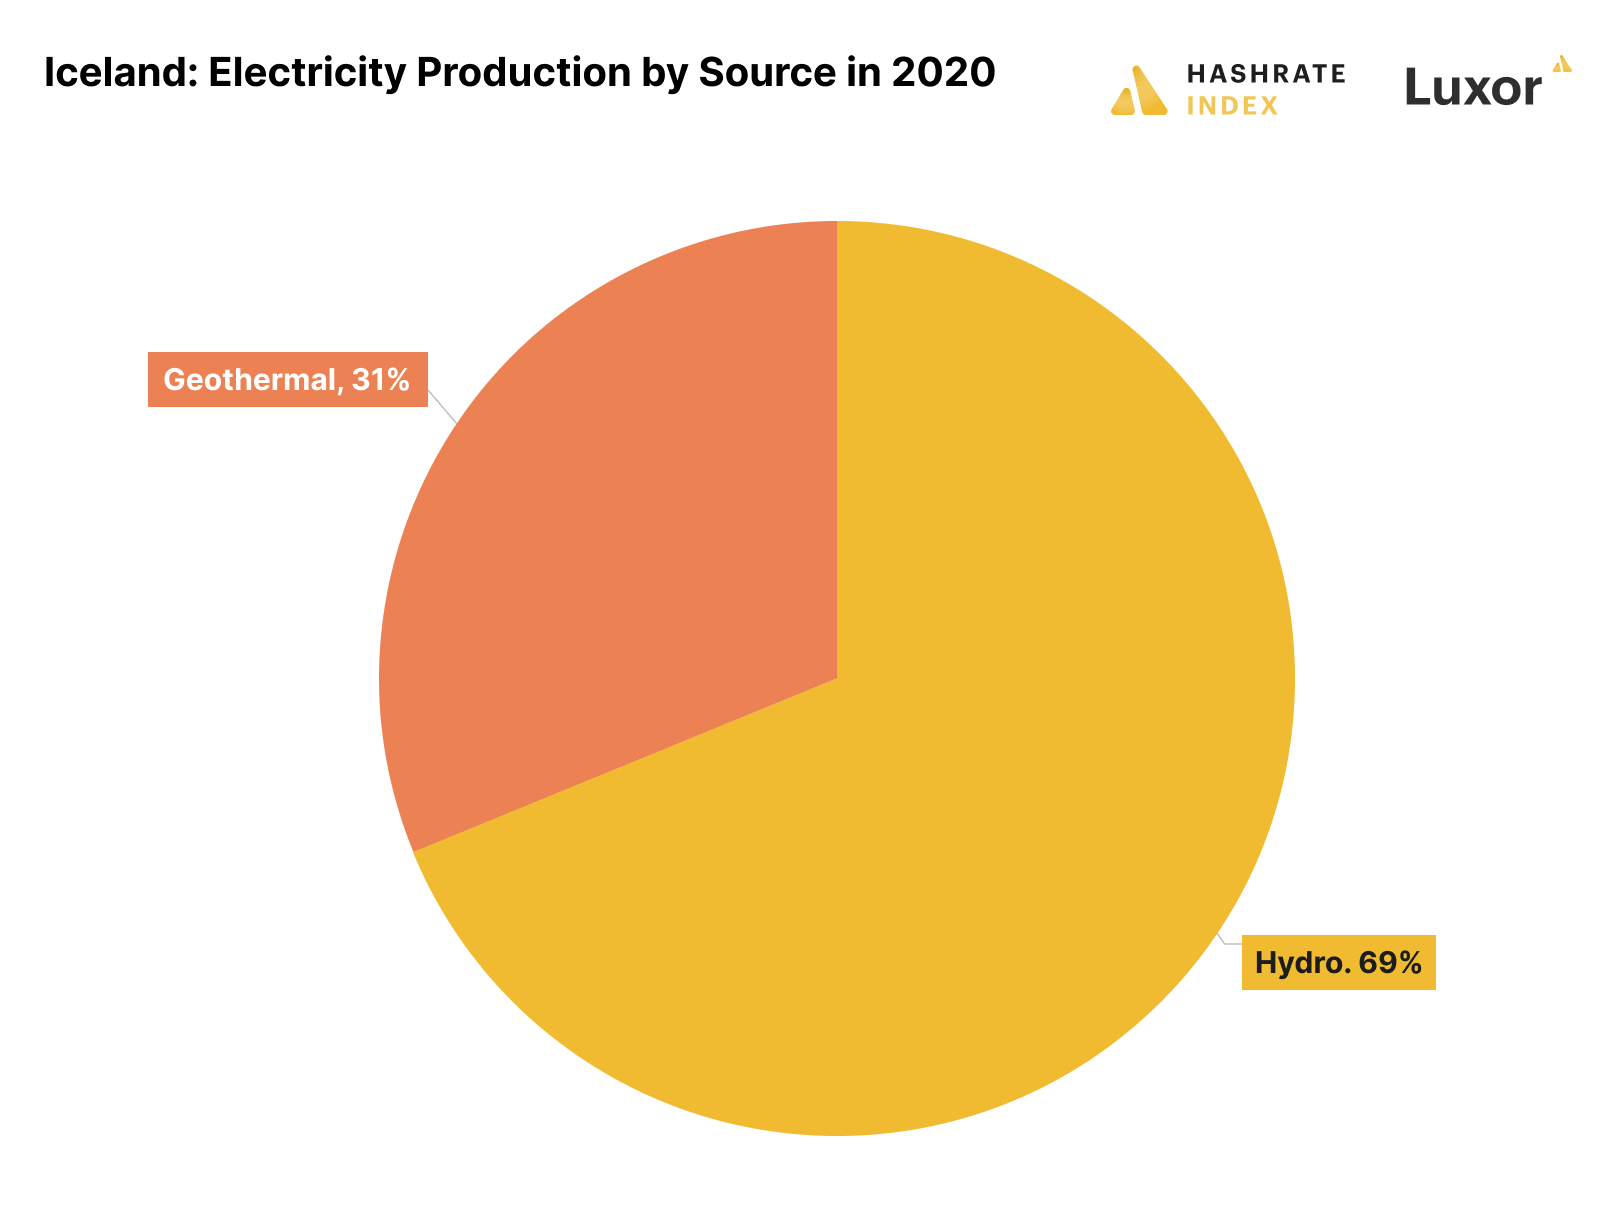 Iceland: Sản xuất điện theo nguồn năm 2020